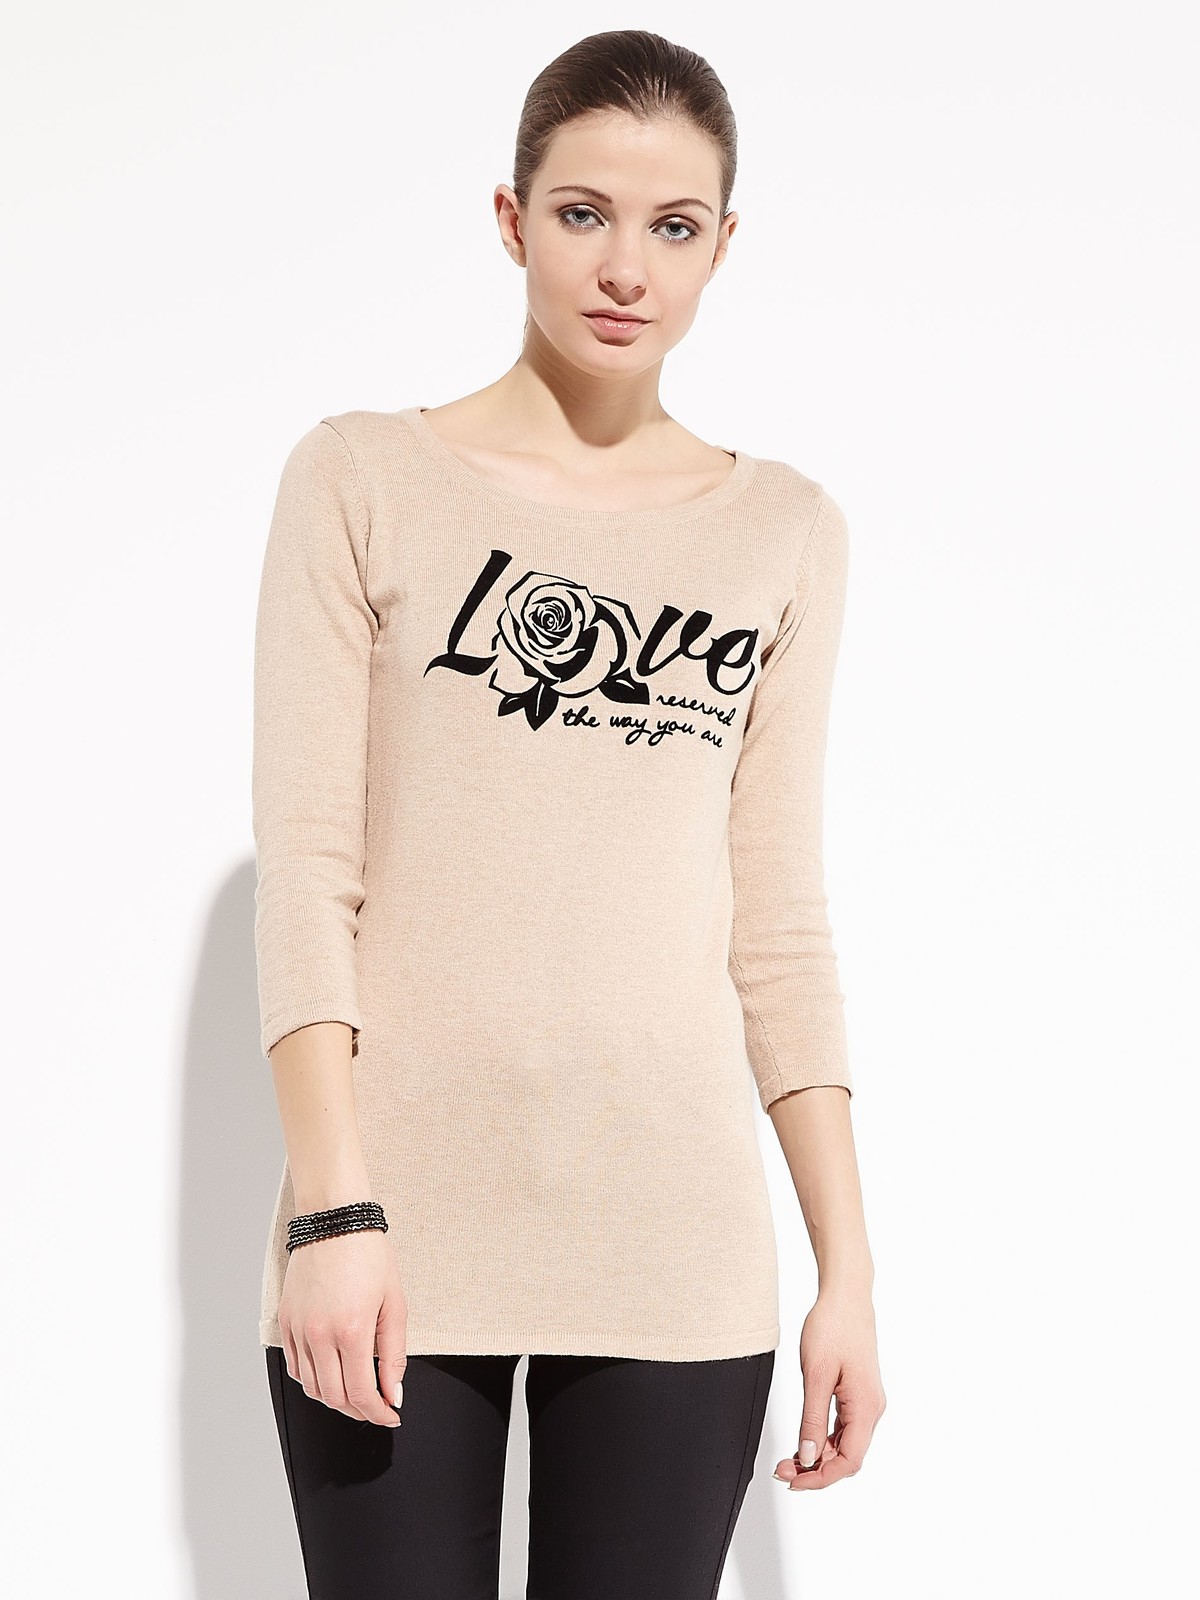 Reserved "Love" feliratos hosszú ujjú póló fotója